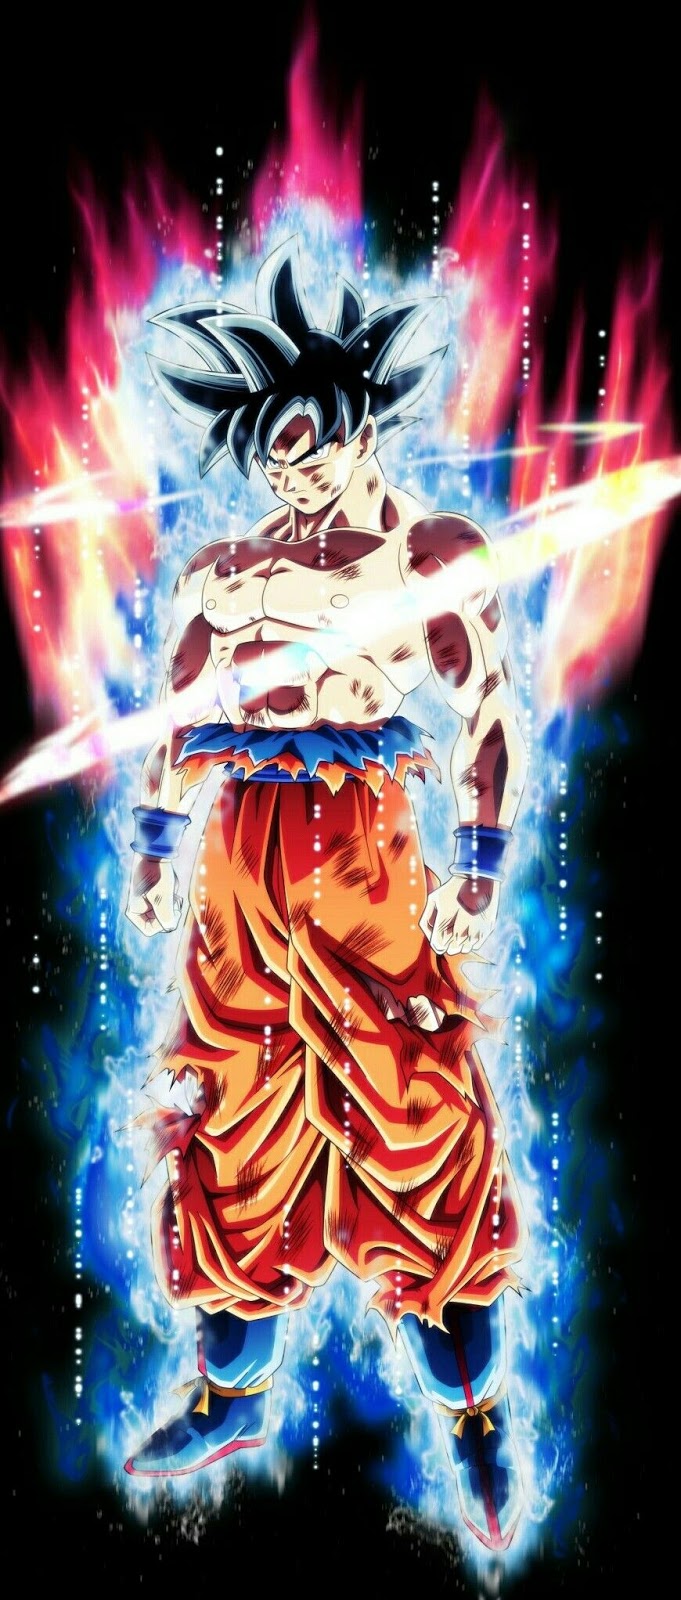 Bức tranh về Goku Bản Năng Vô Cực với vẻ đẹp tuyệt vời